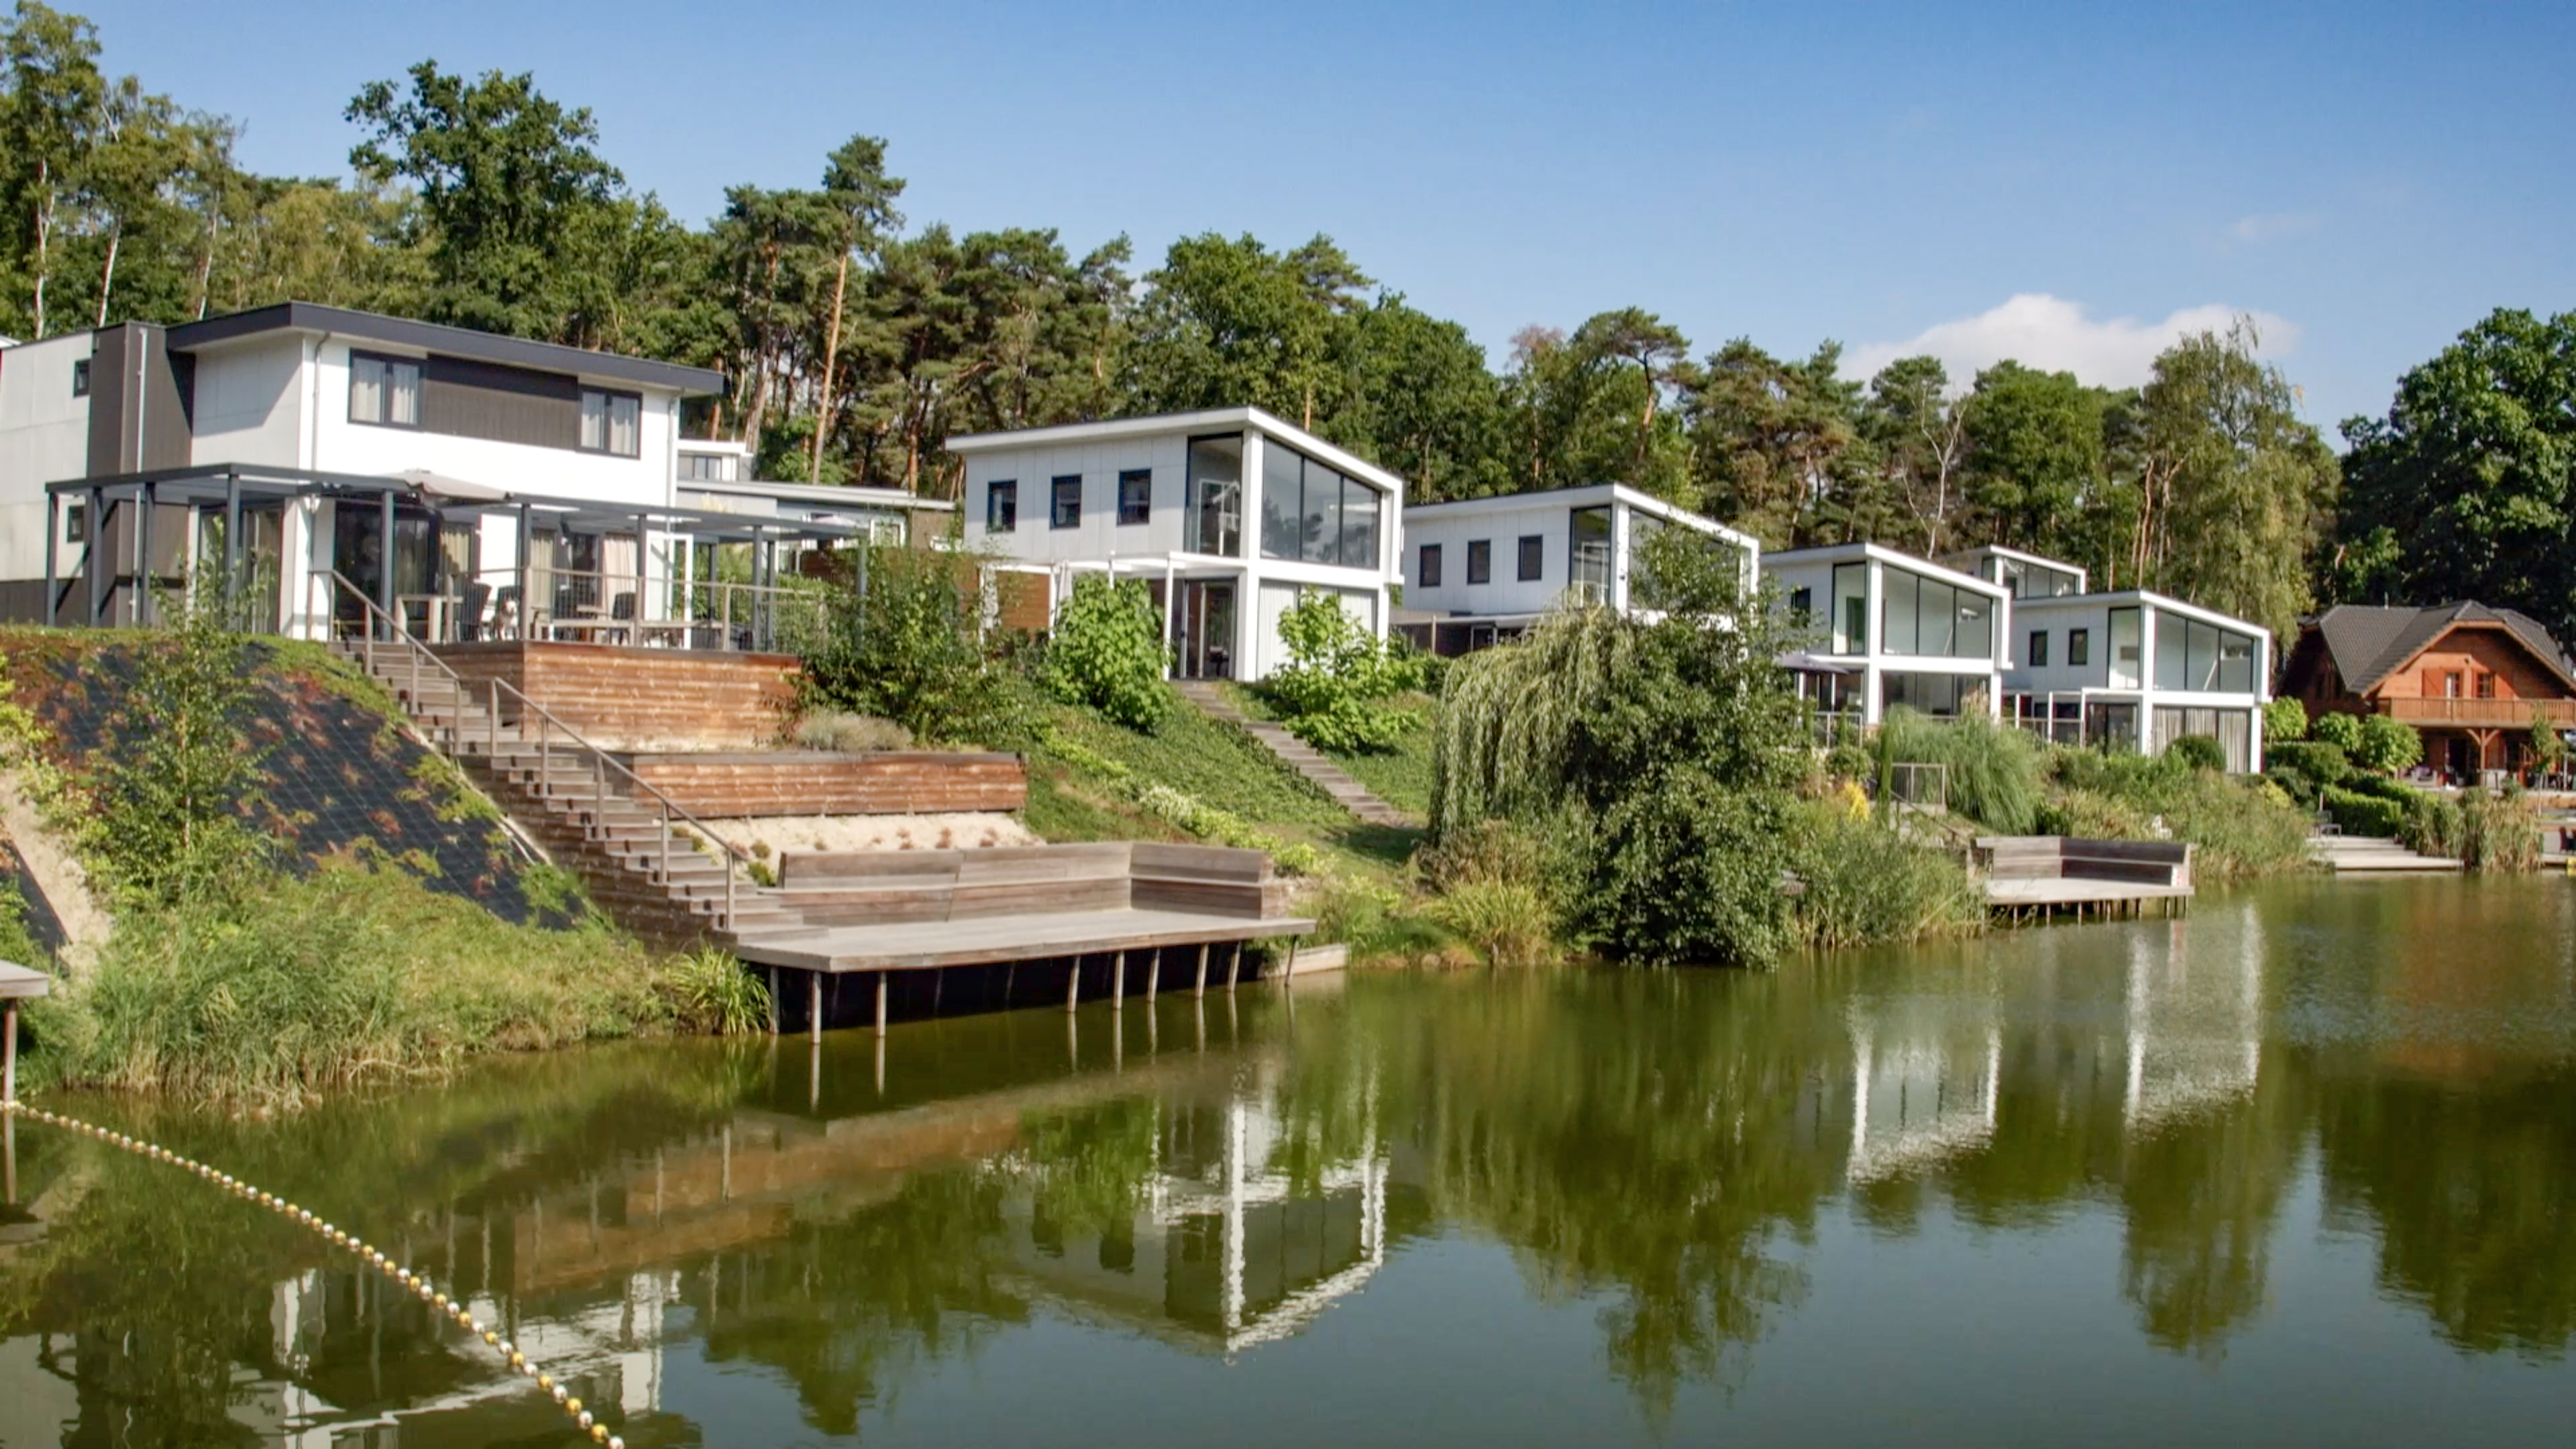 Aanbieding bungalow Zuid Limburg 🏕️ EuroParcs Resort Brunssummerheide